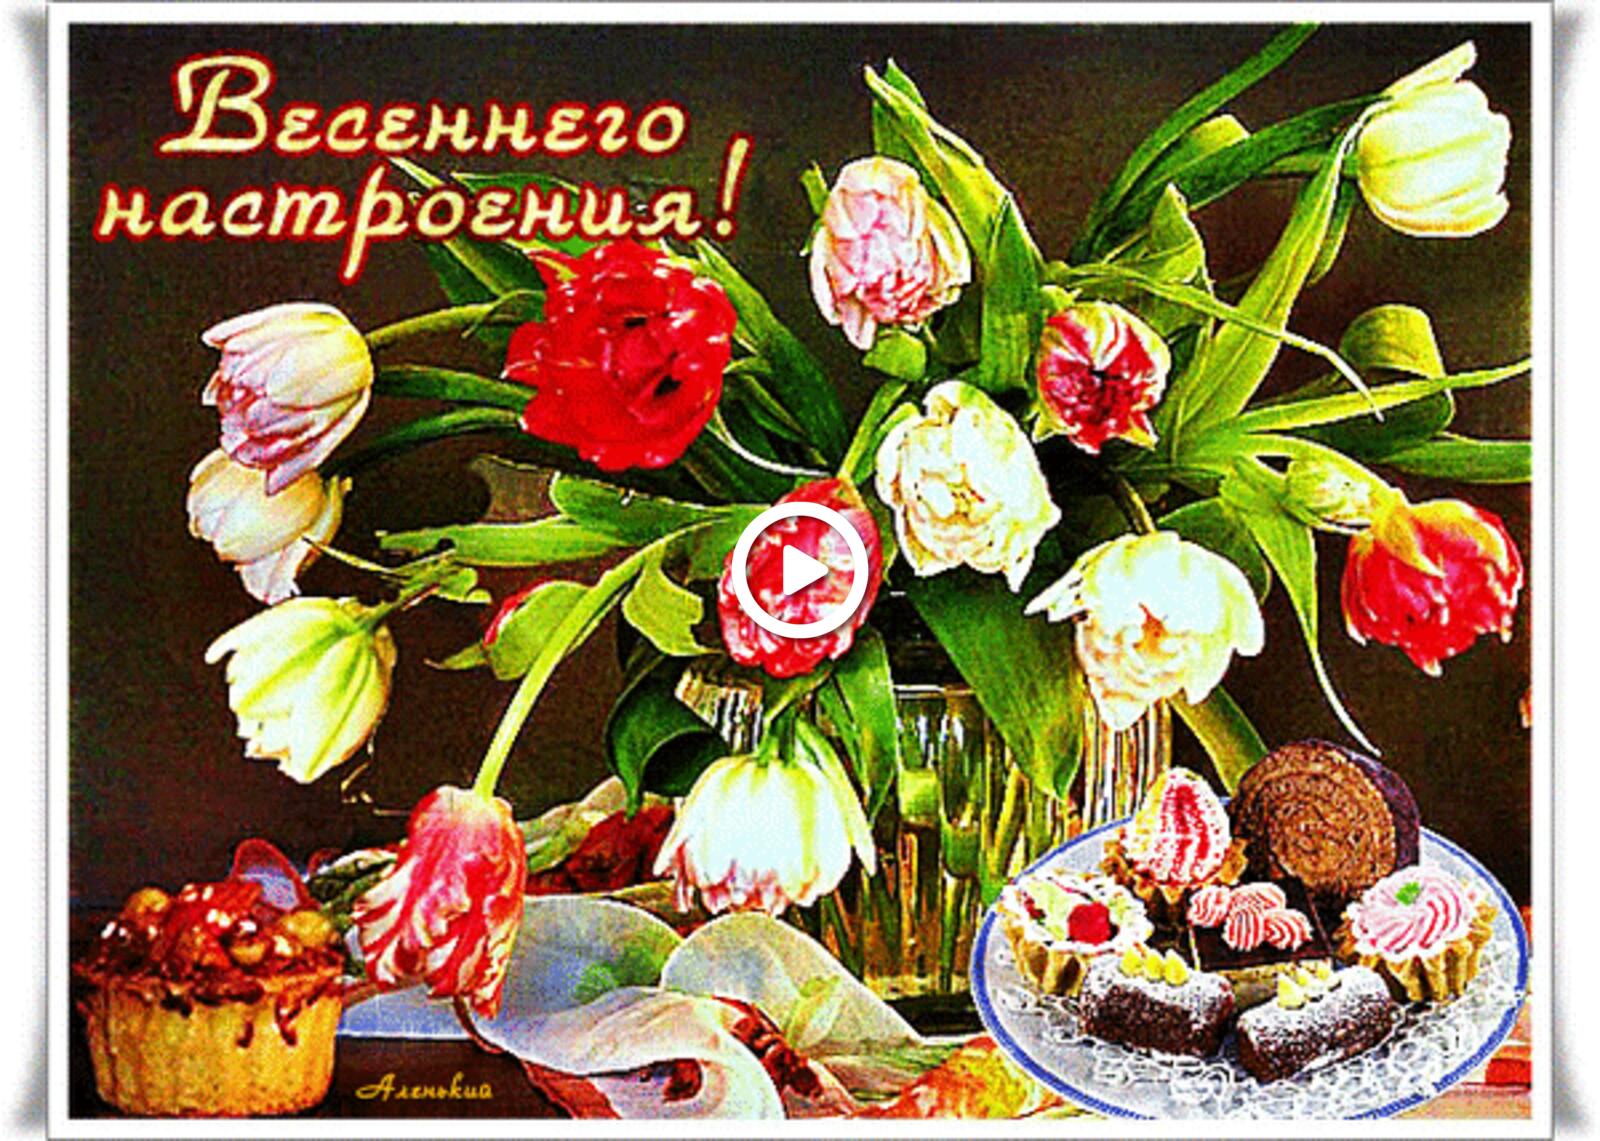 一张以花束 心情 鲜花为主题的明信片